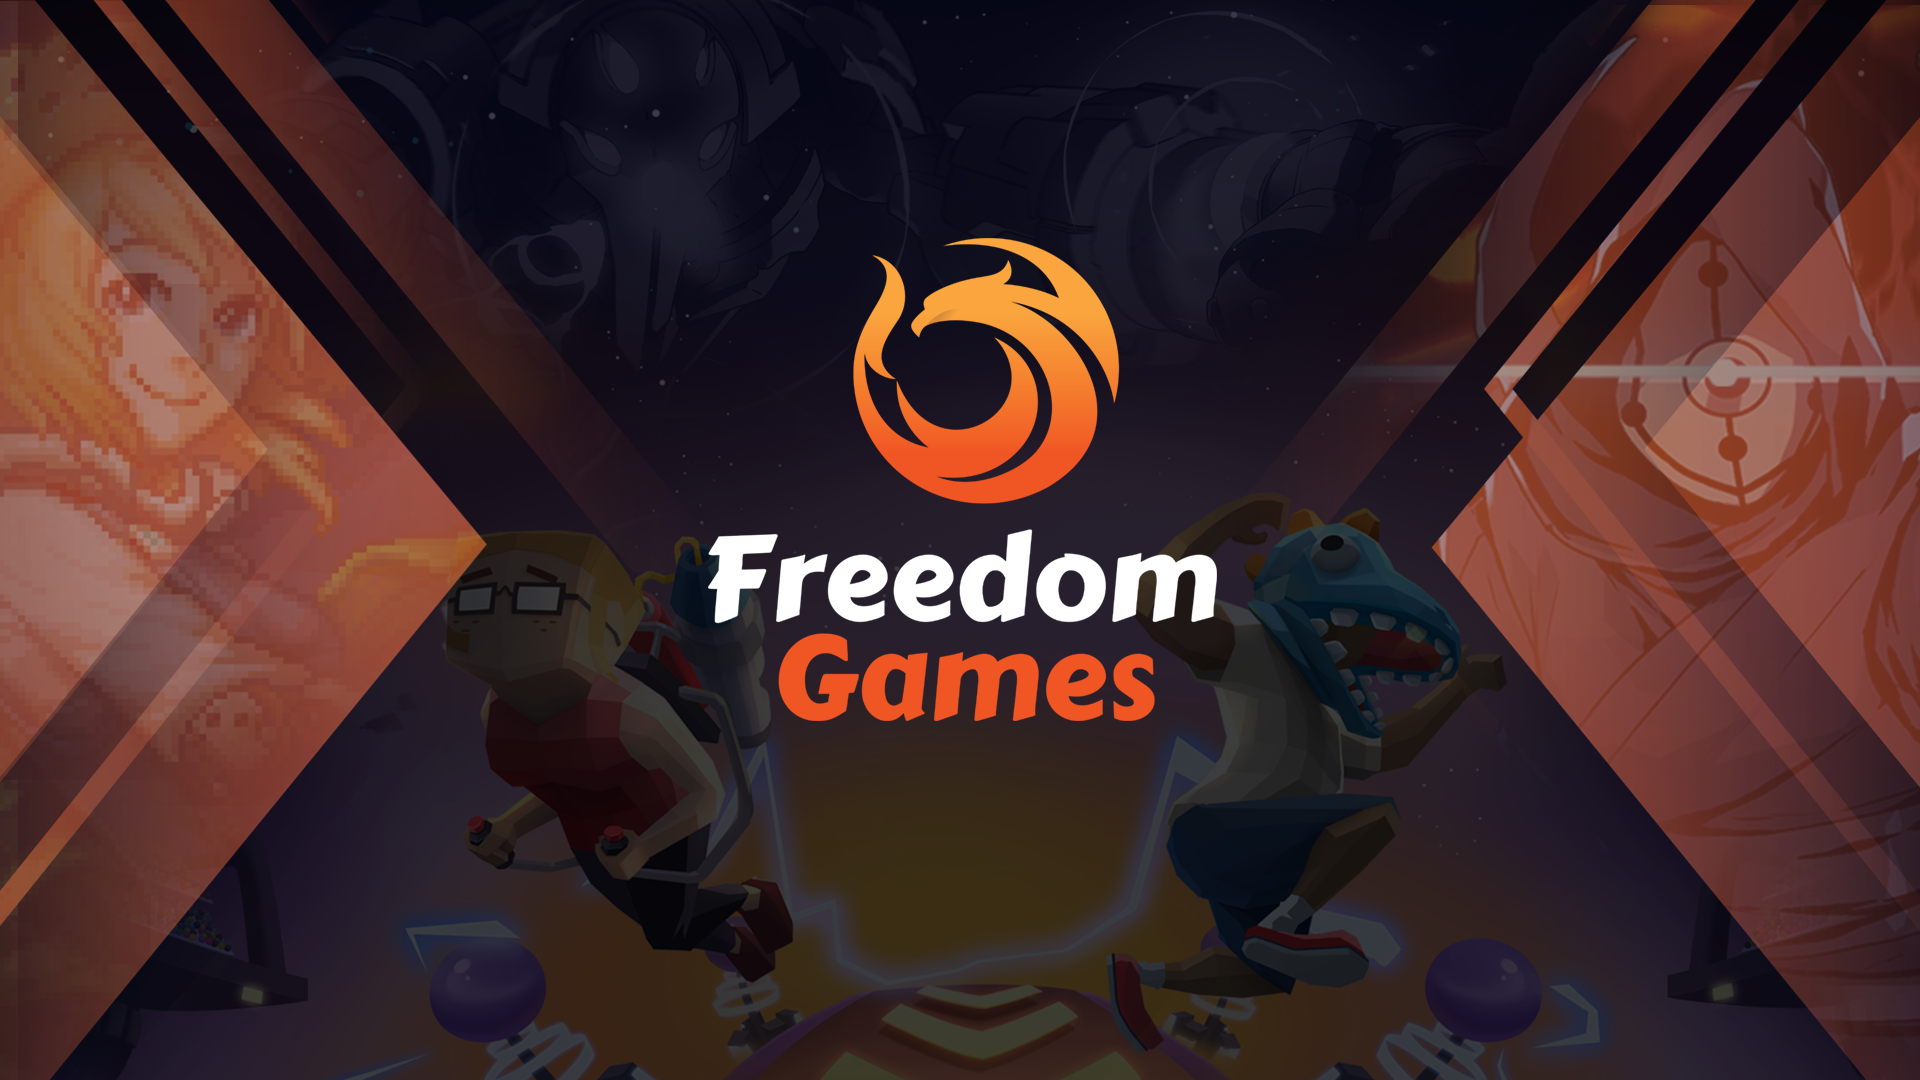 Freedom Games' logo.